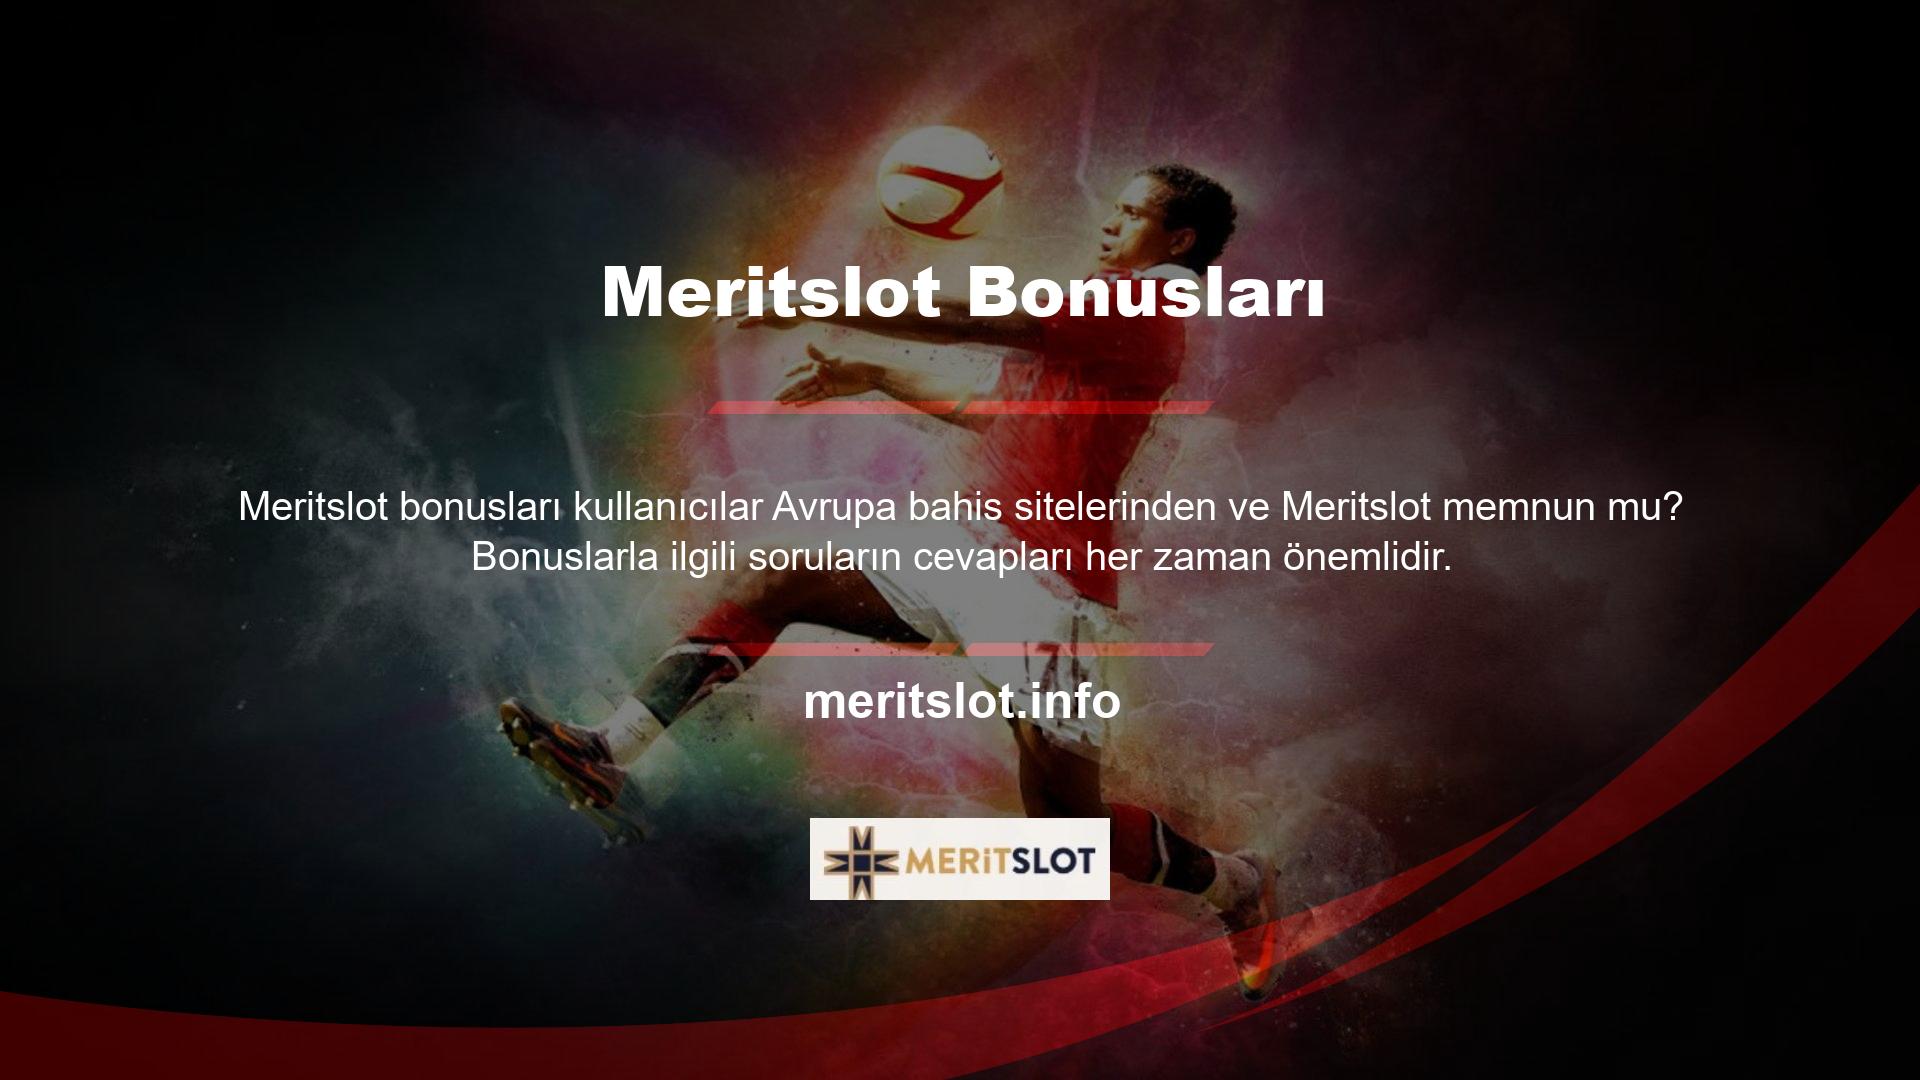 Meritslot Bahis, müşteri odaklı bonuslarla birçok çevrimiçi ve çevrimdışı bonus ve avantaj sunar